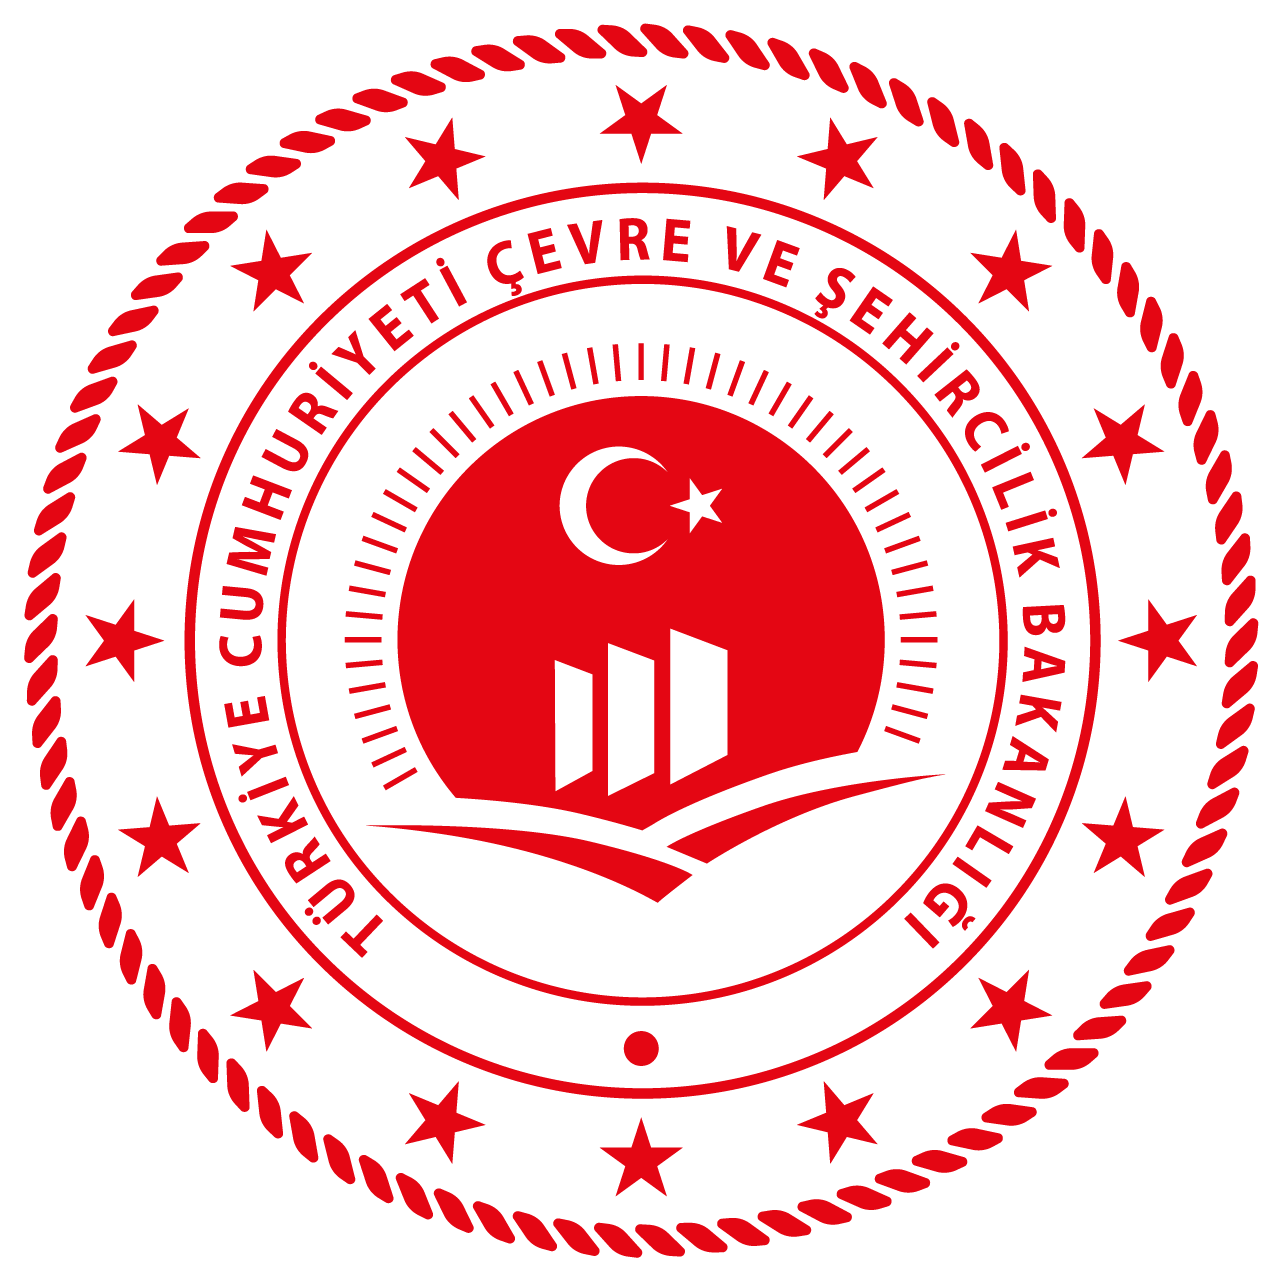 T.C. Çevre ve Şehircilik Bakanlığı Logo png